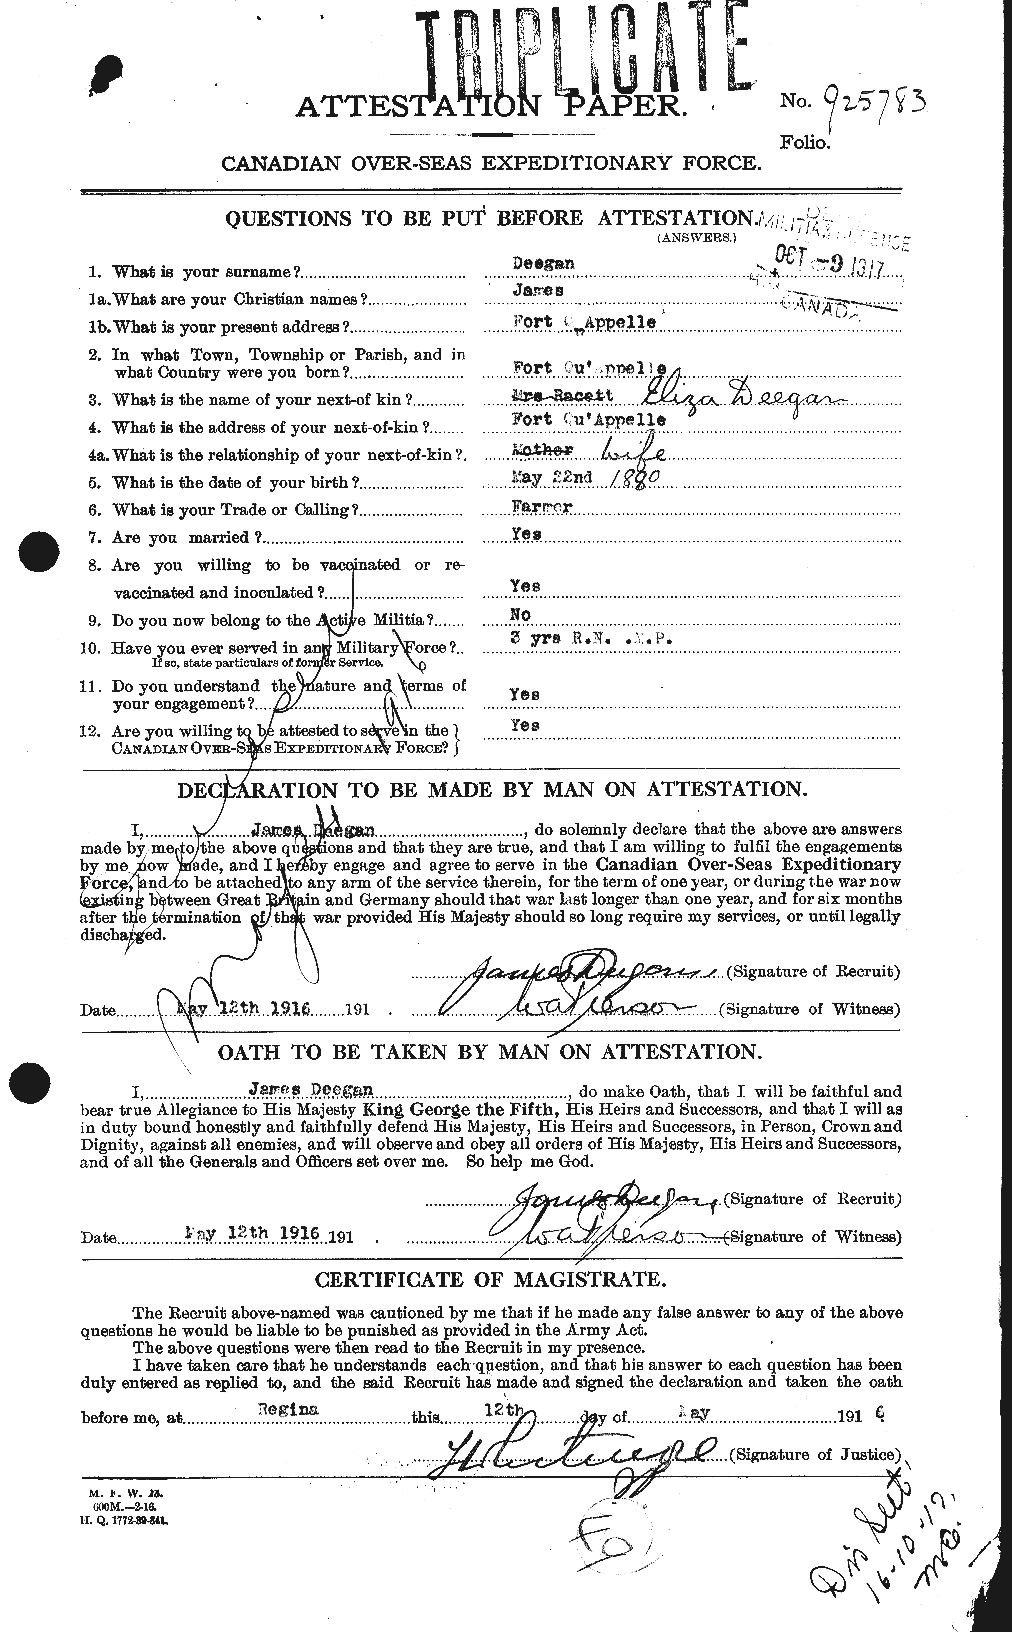 Dossiers du Personnel de la Première Guerre mondiale - CEC 285736a